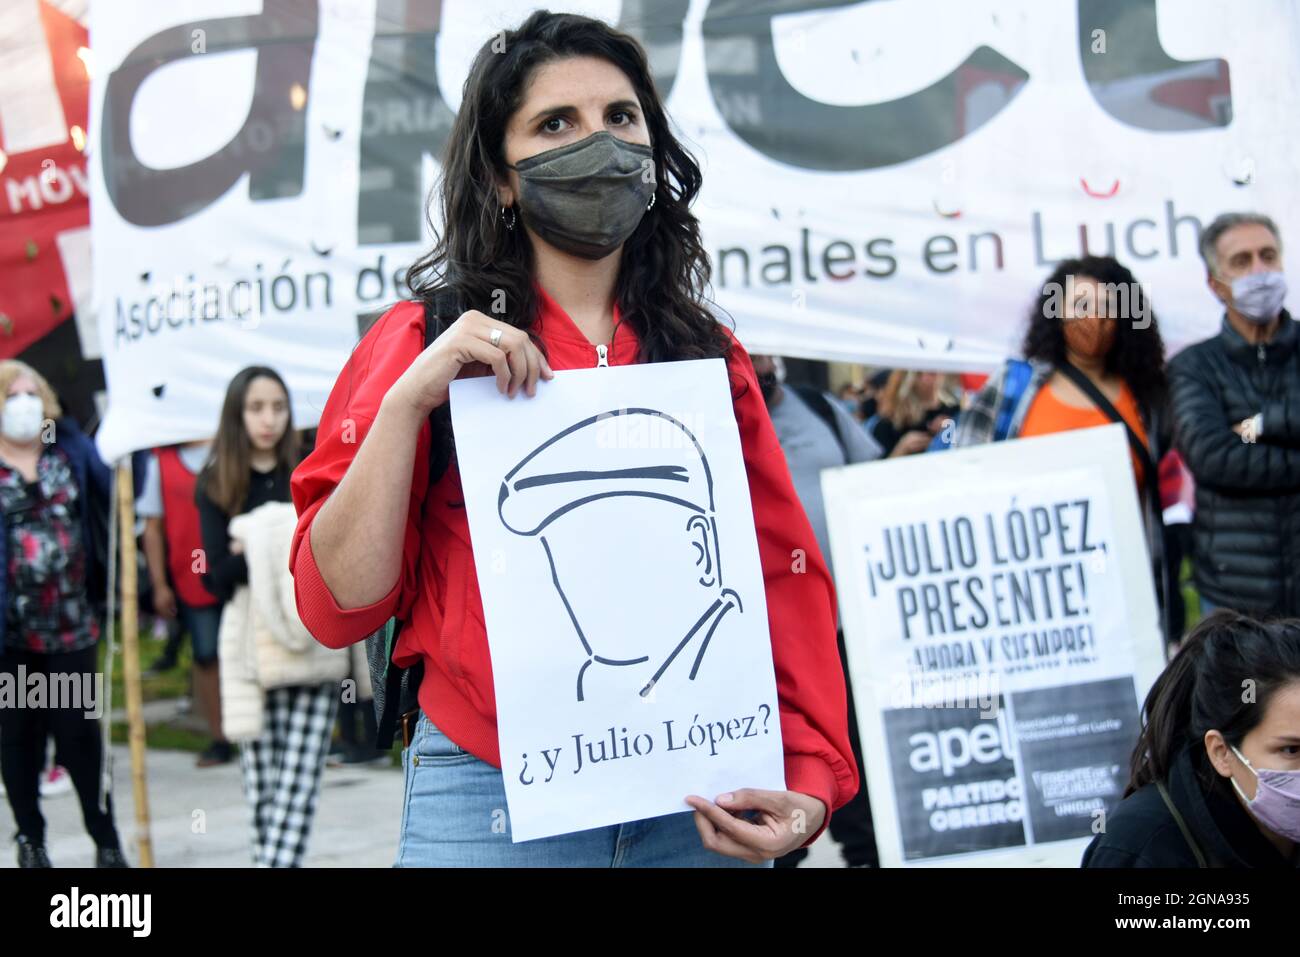 Manifestación reclamando la aparición con vida del desaparecido Jorge Julio López en Buenos Aires, Argentina Stock Photo